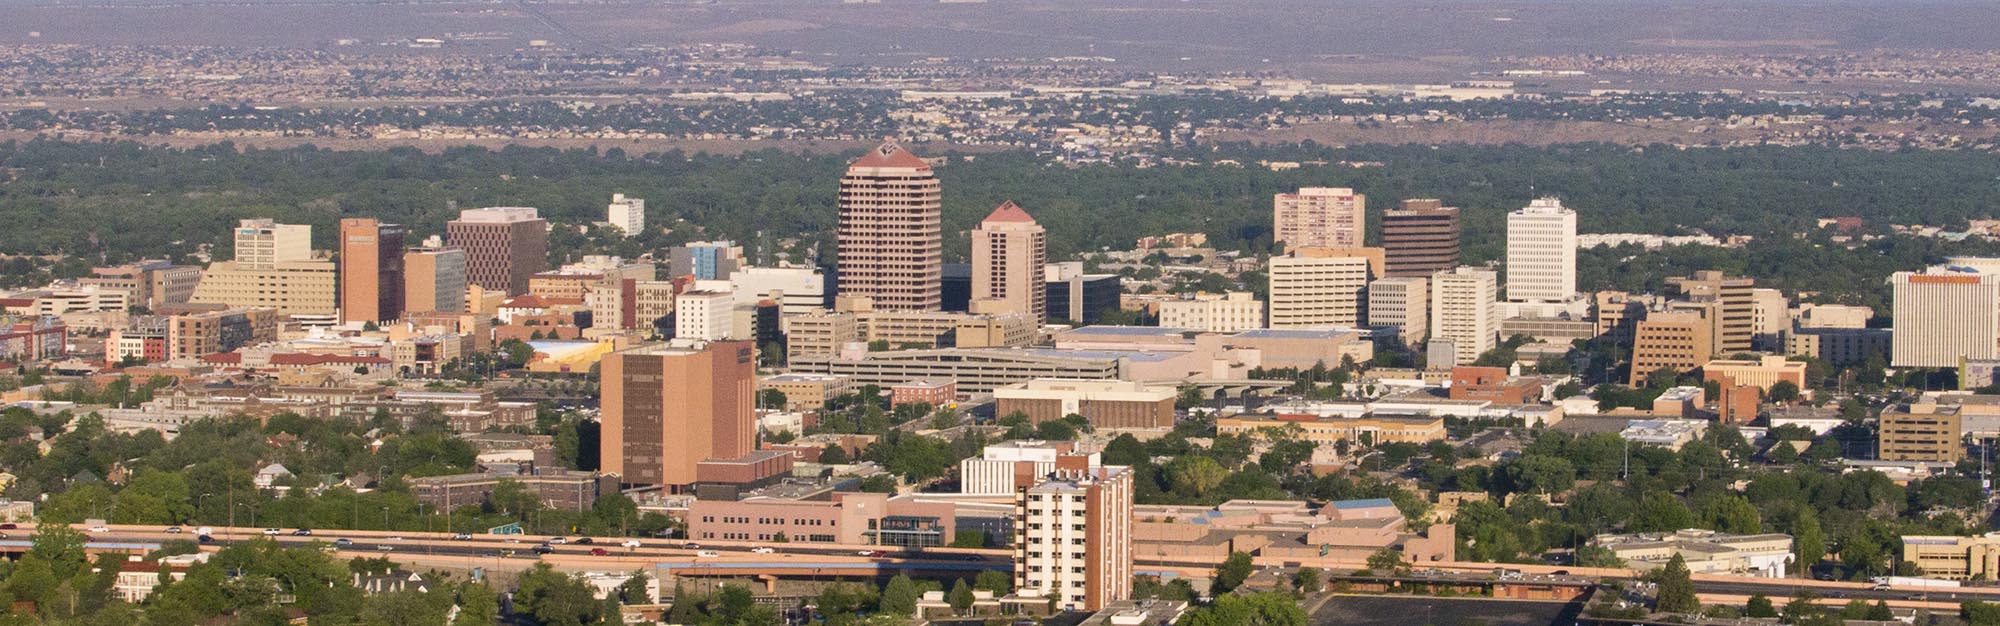 Vue aérienne du centre-ville d'Albuquerque